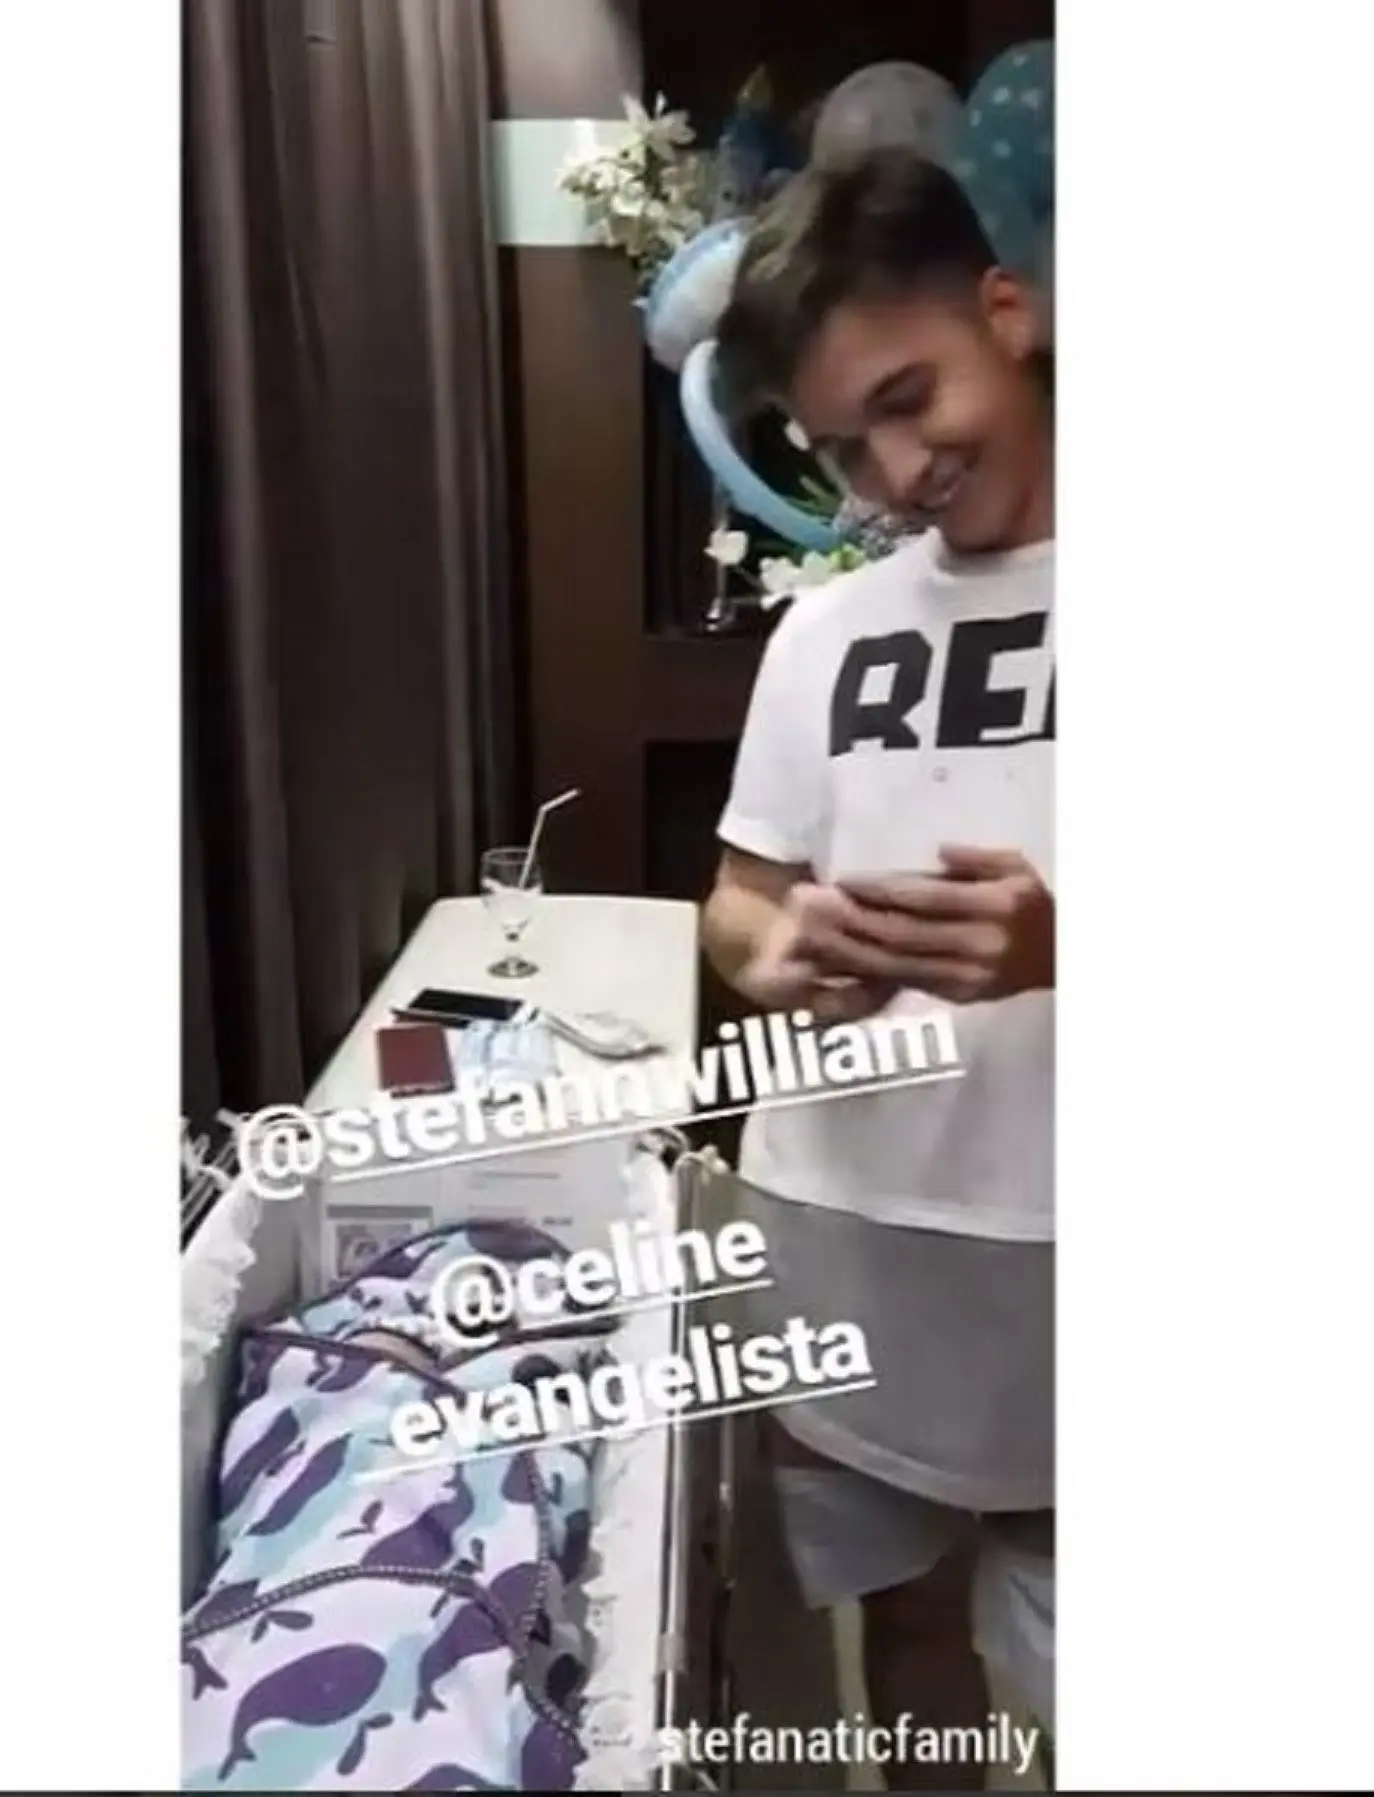 Stefan William tersenyum melihat bayinya (Instagram/@stefanaticfamily)